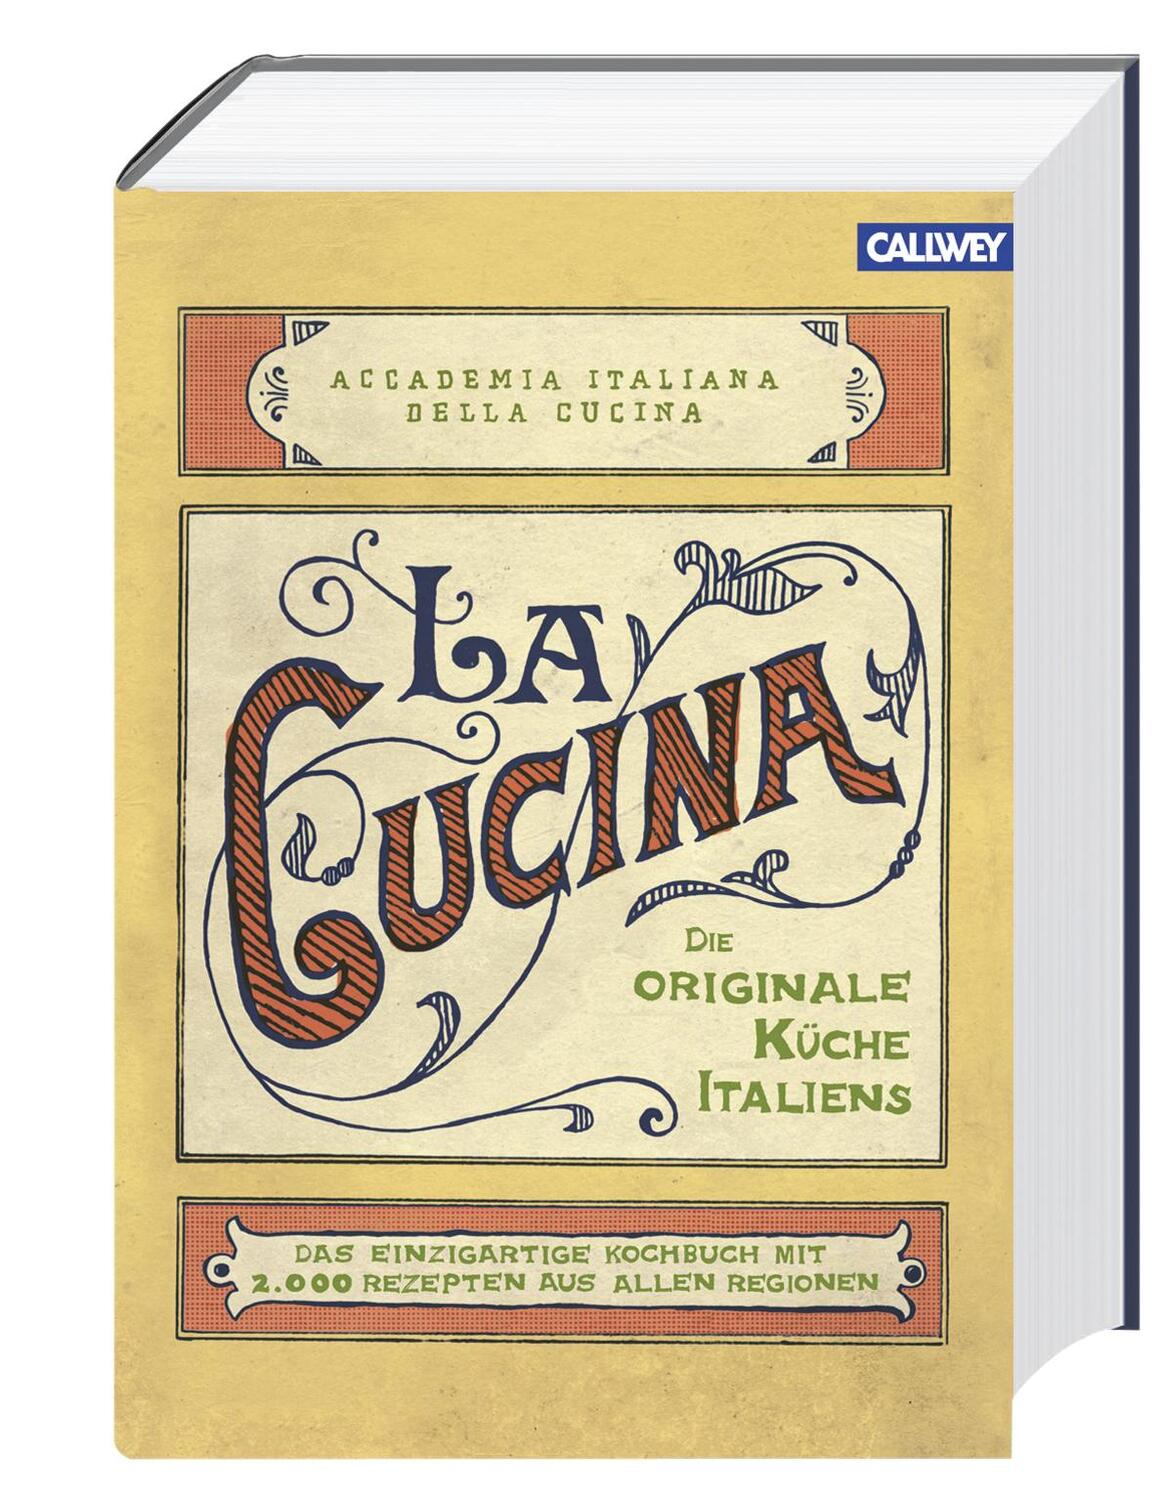 La Cucina - Die originale Küche Italiens - Accademia Italiana della Cucina